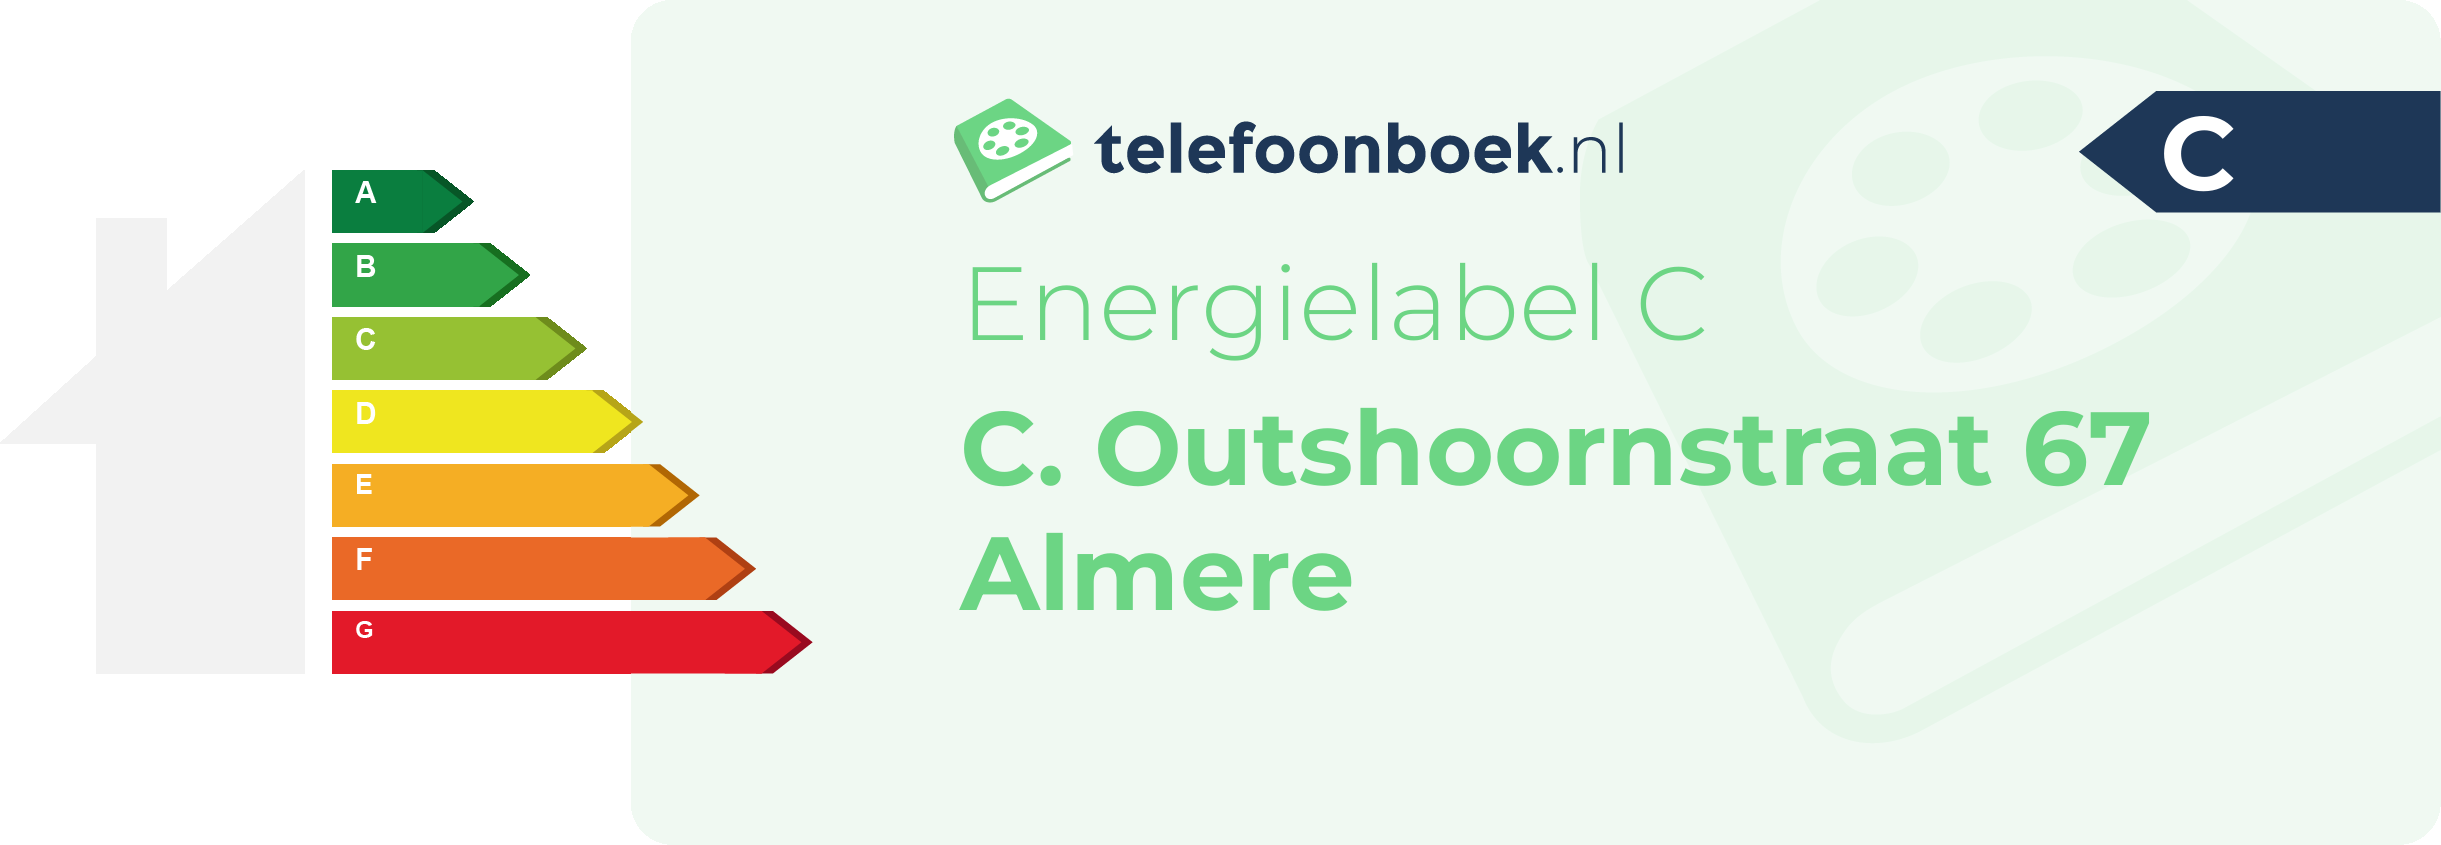 Energielabel C. Outshoornstraat 67 Almere